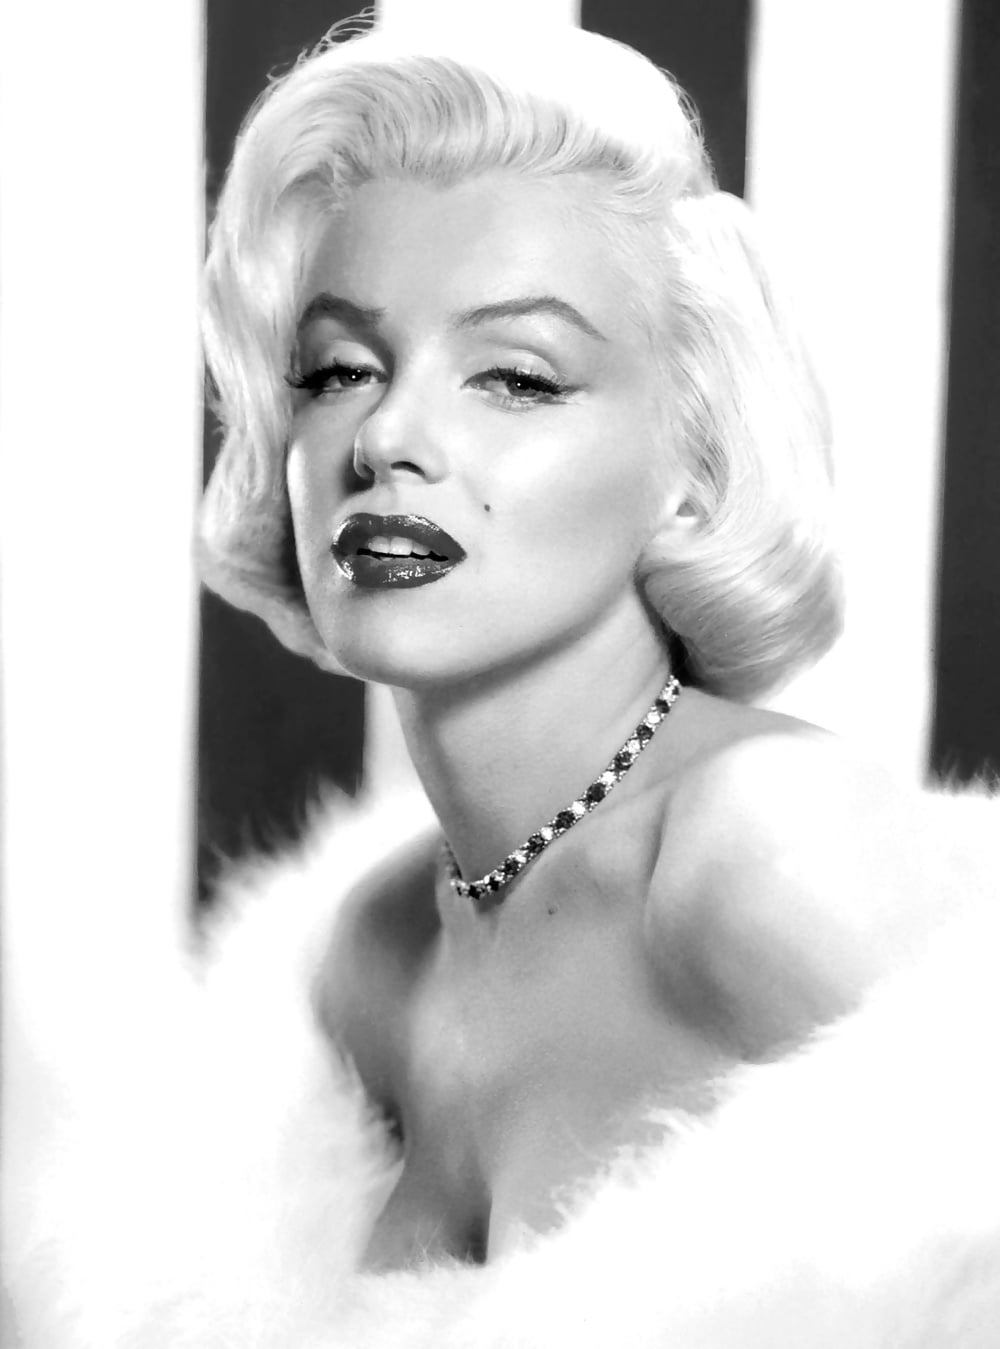 Marilyn 2